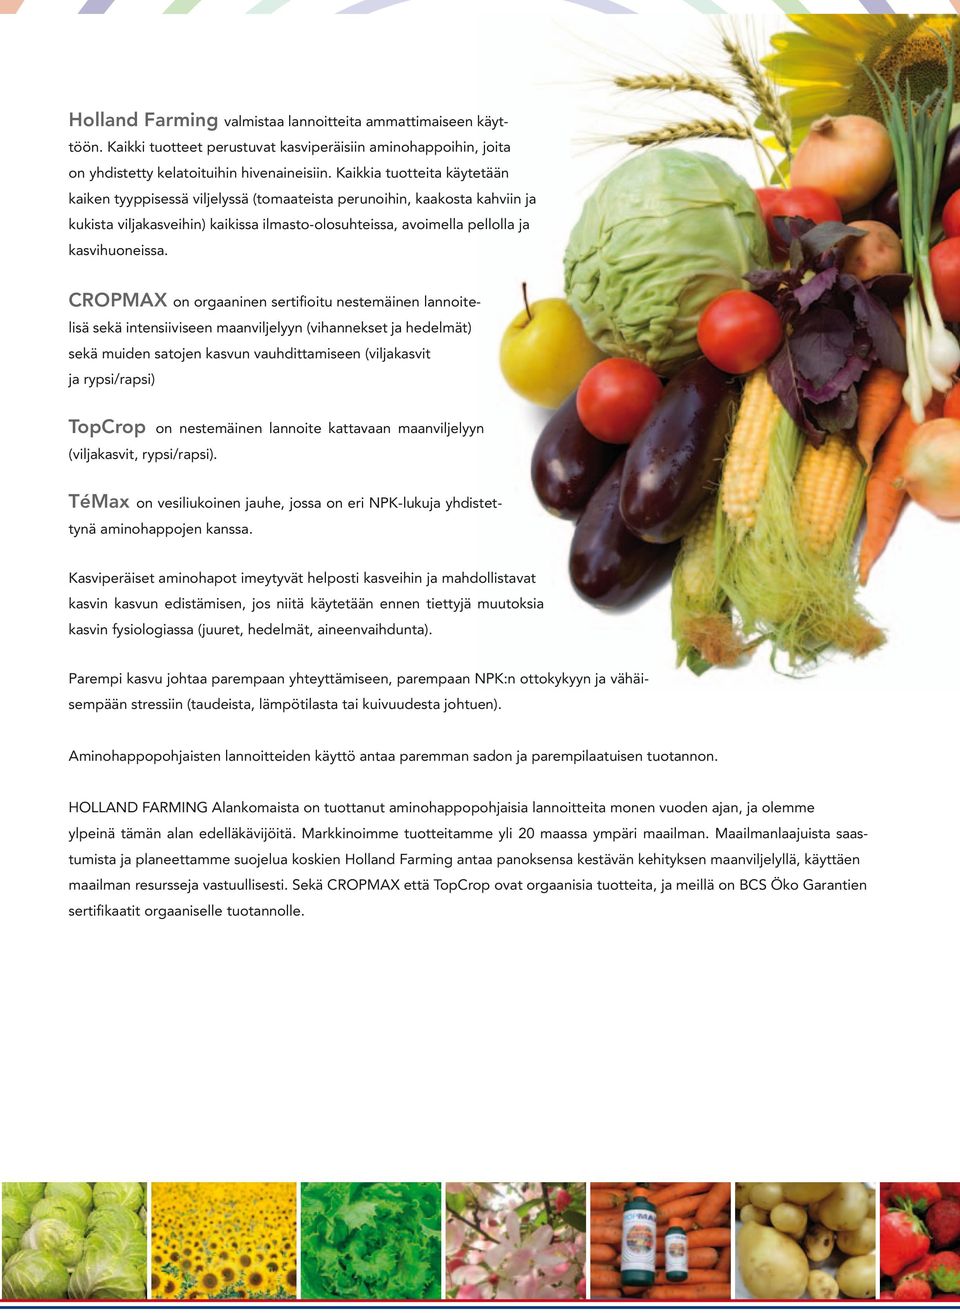 CROPMAX on orgaaninen sertifioitu nestemäinen lannoitelisä sekä intensiiviseen maanviljelyyn (vihannekset ja hedelmät) sekä muiden satojen kasvun vauhdittamiseen (viljakasvit ja rypsi/rapsi) TopCrop